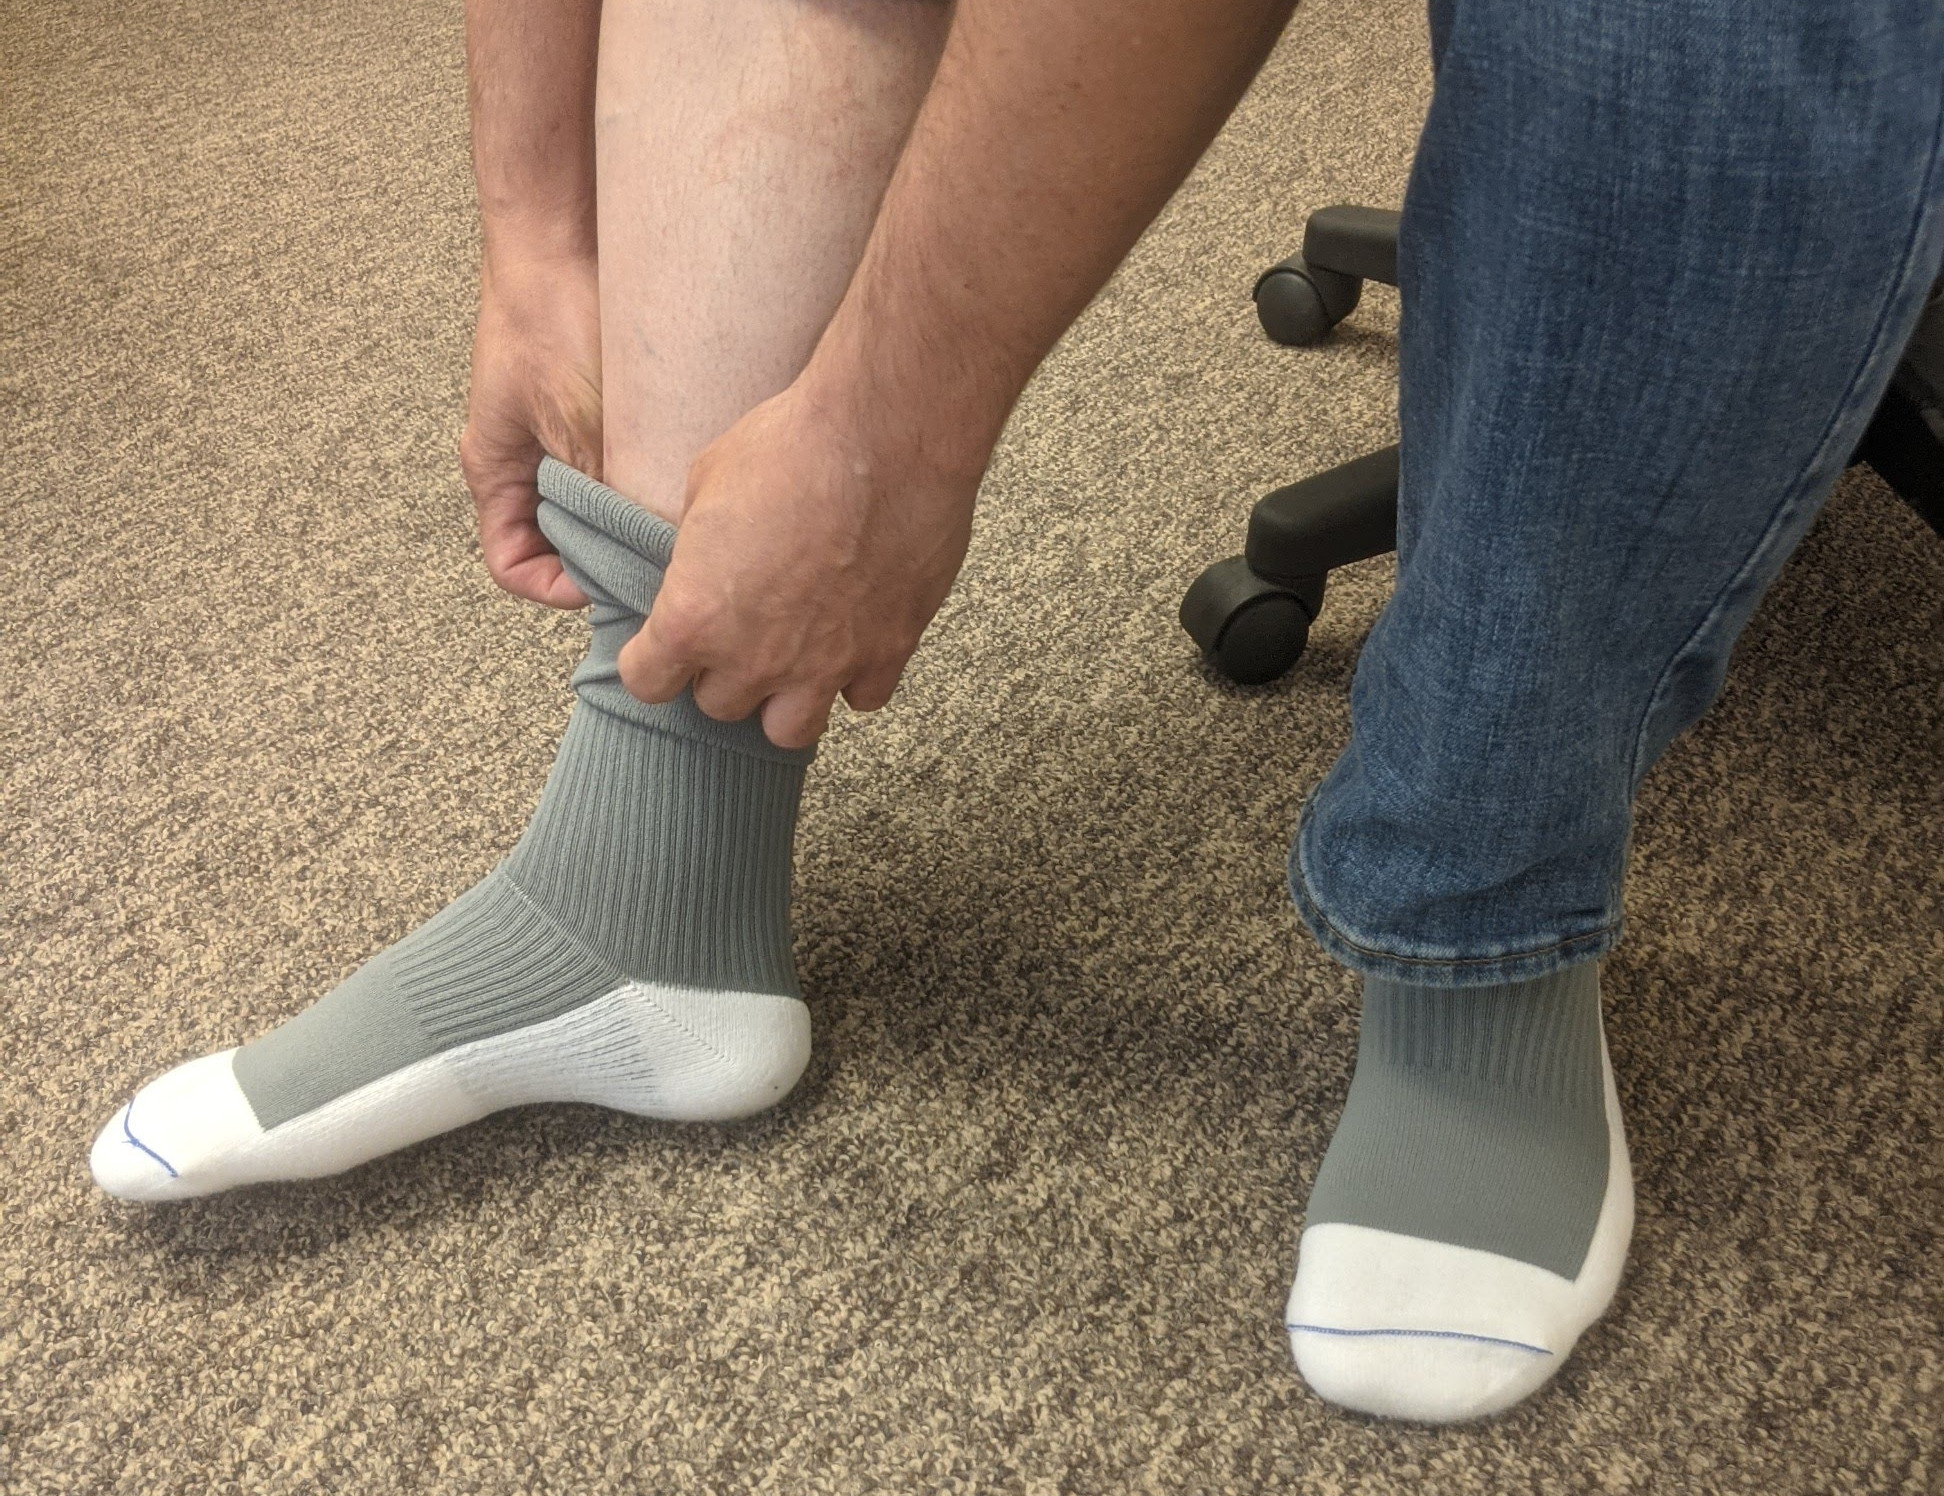 Should I Wear Compression Socks At Work?